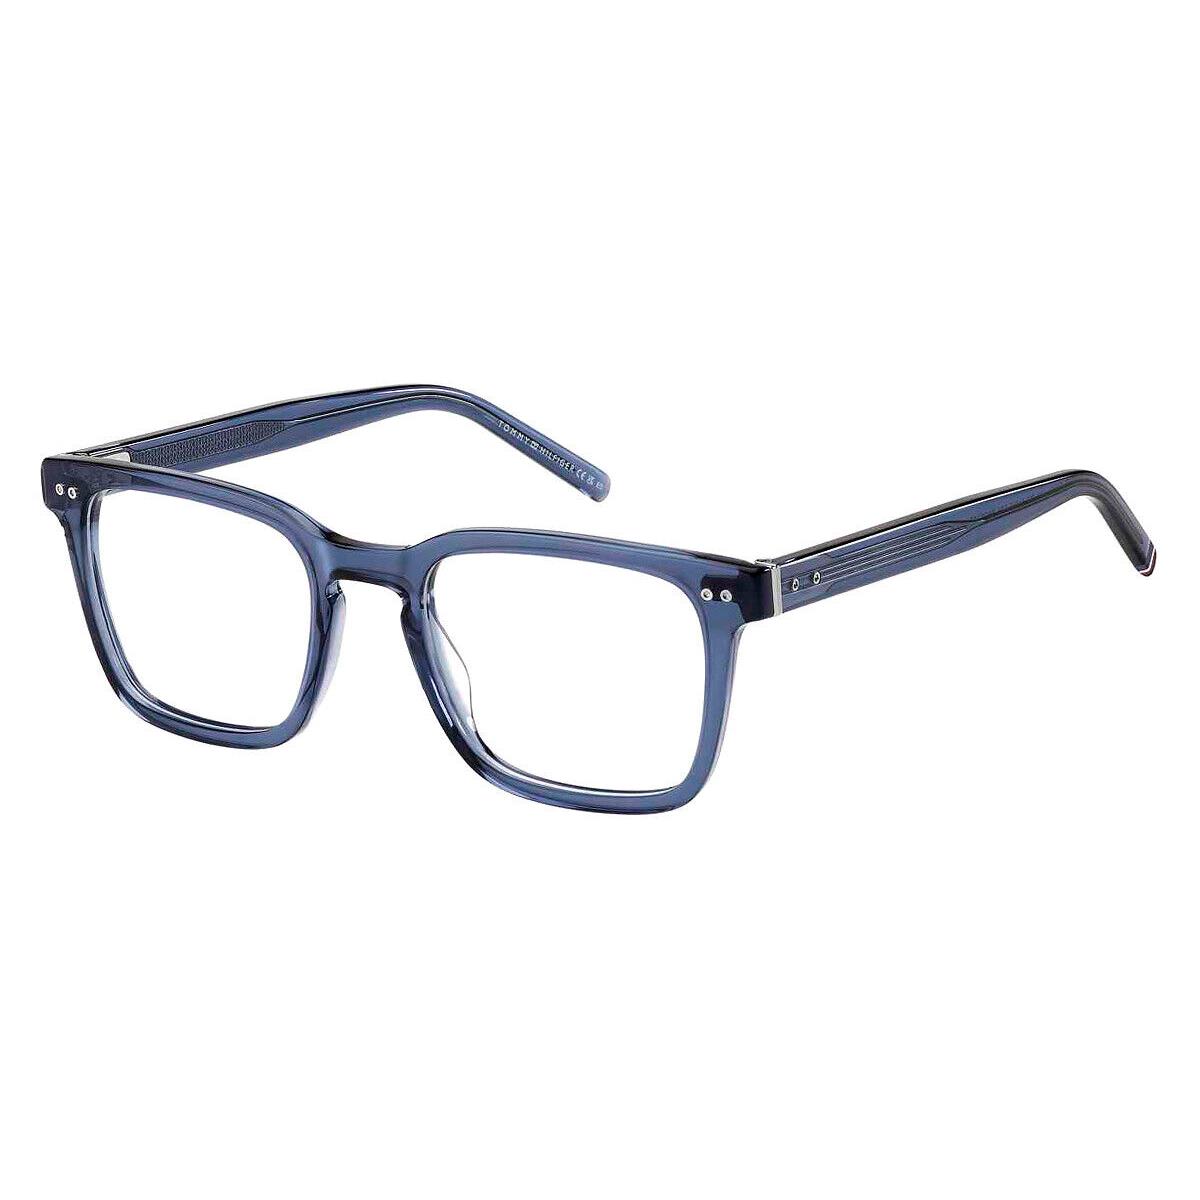 Tommy Hilfiger Thf Eyeglasses Men Blue 52mm - Frame: Blue, Lens: Demo